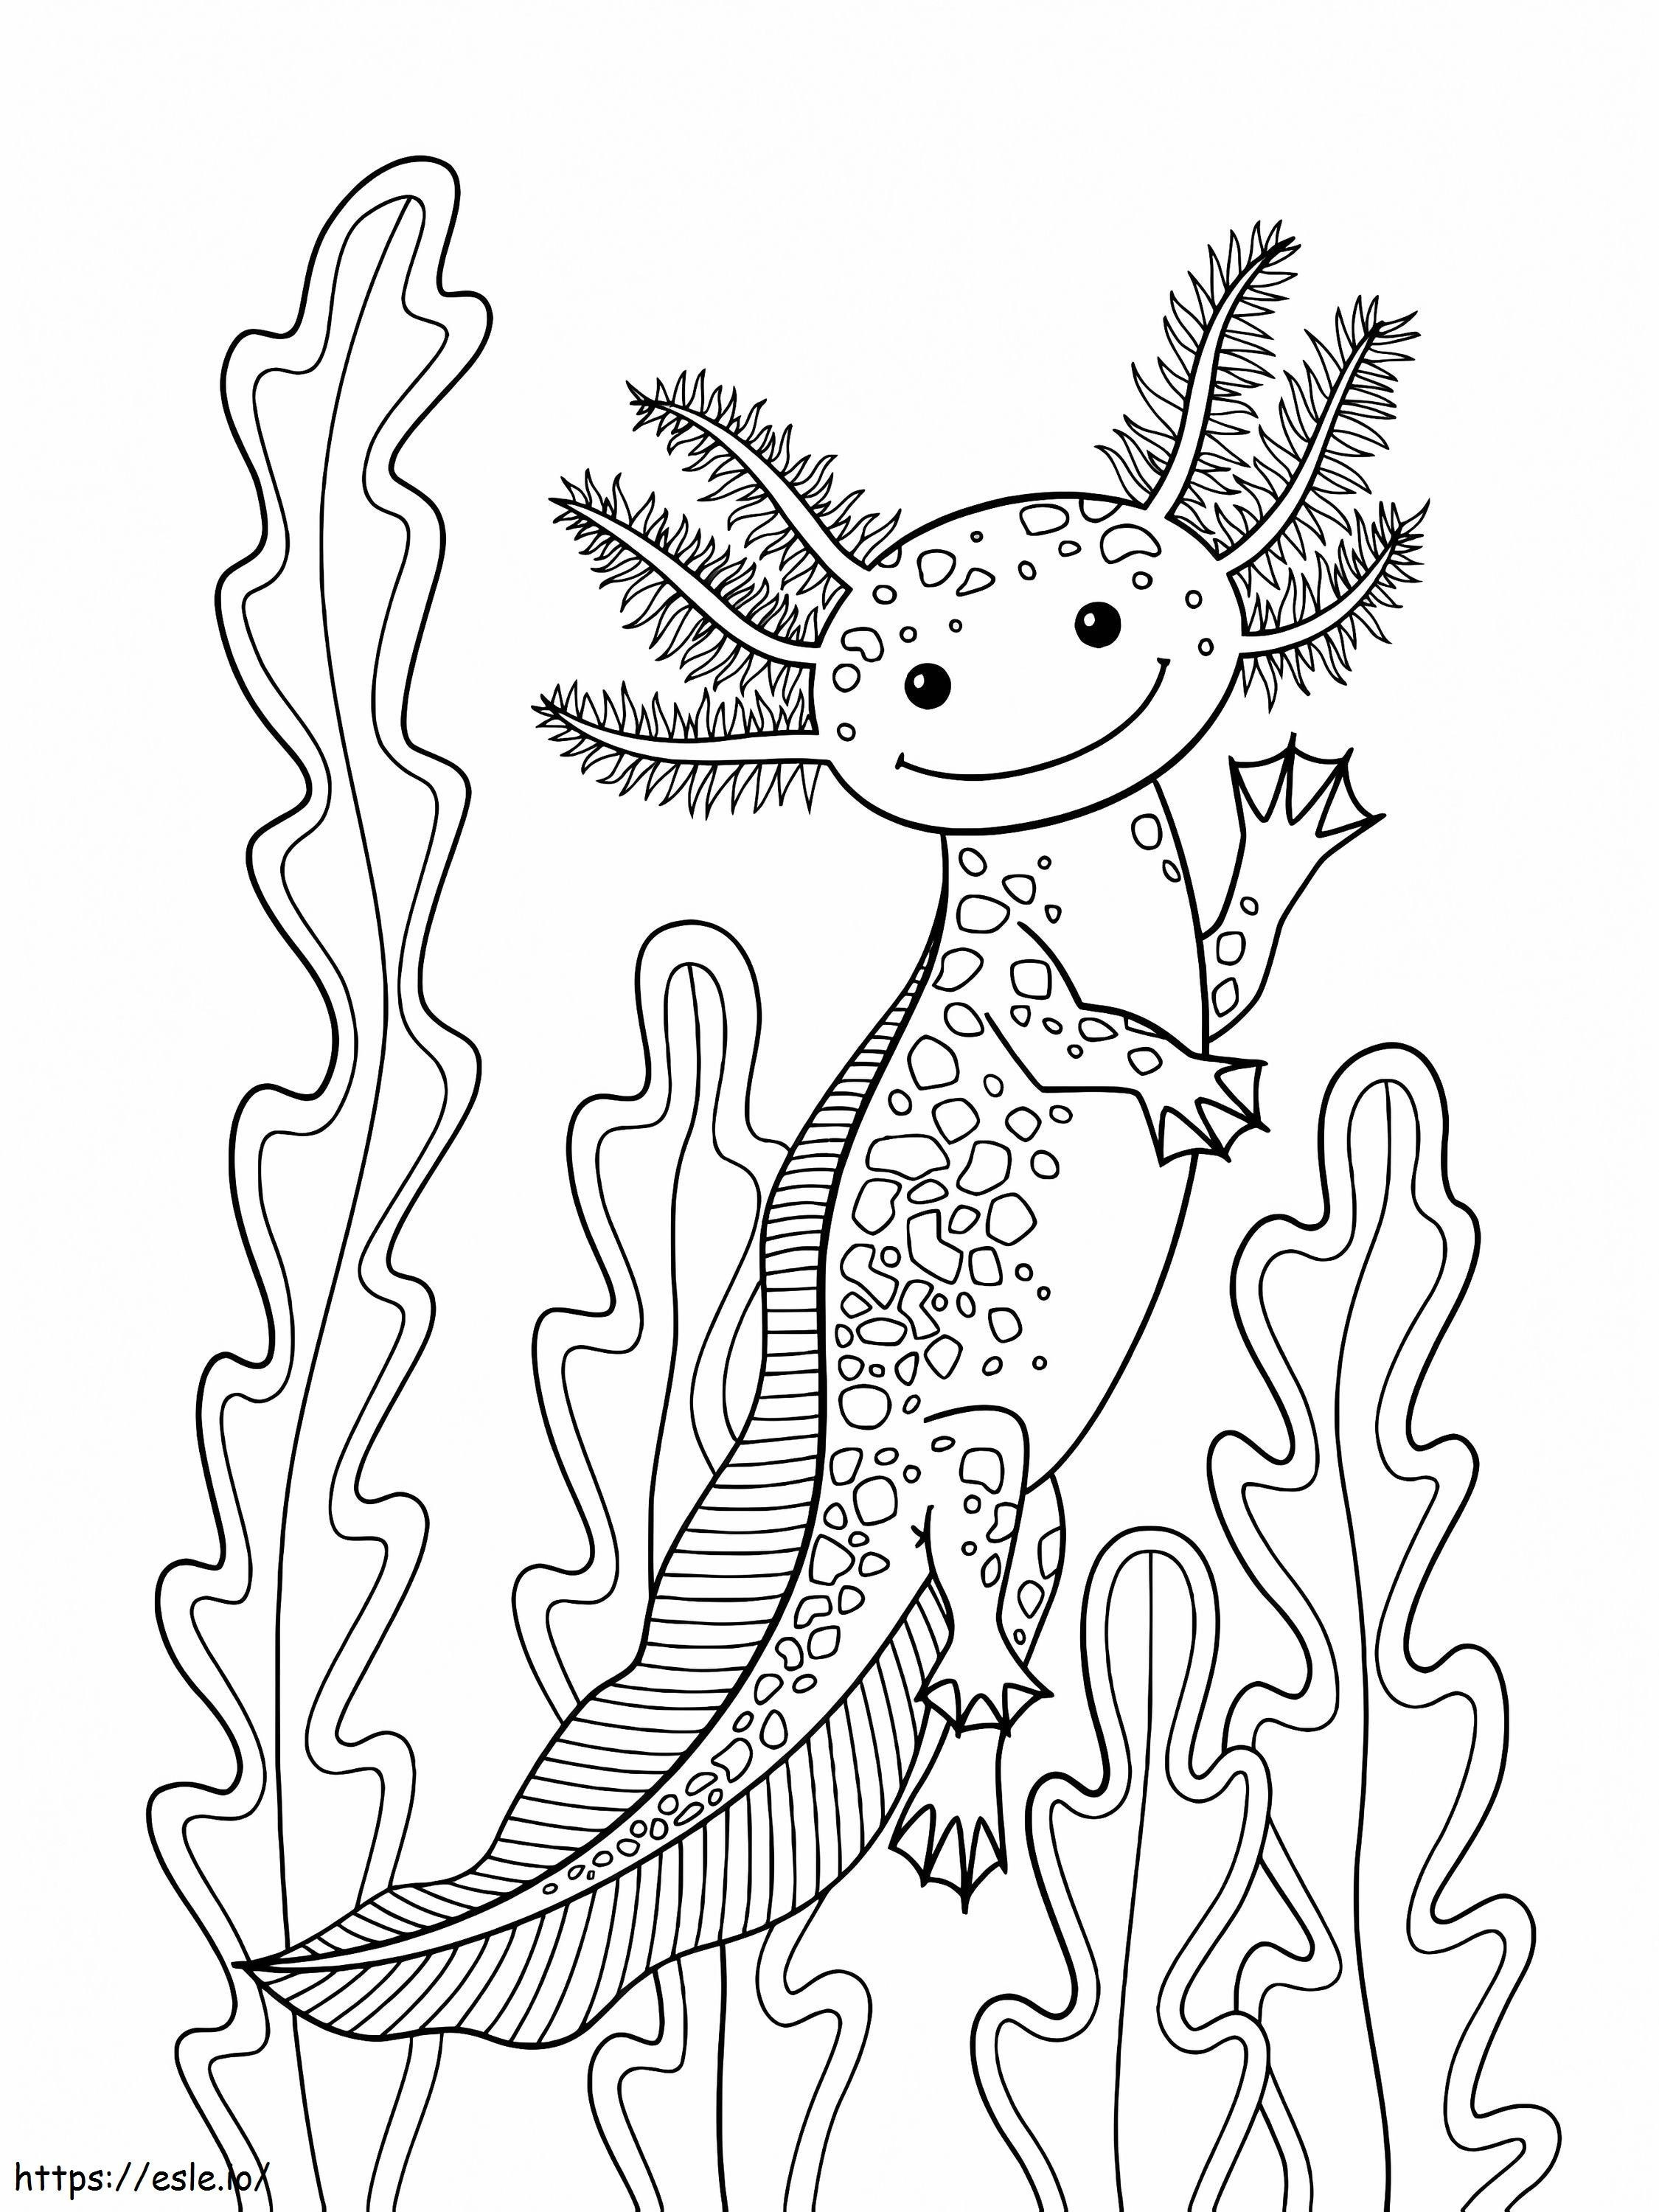 Axolotl Smiling coloring page